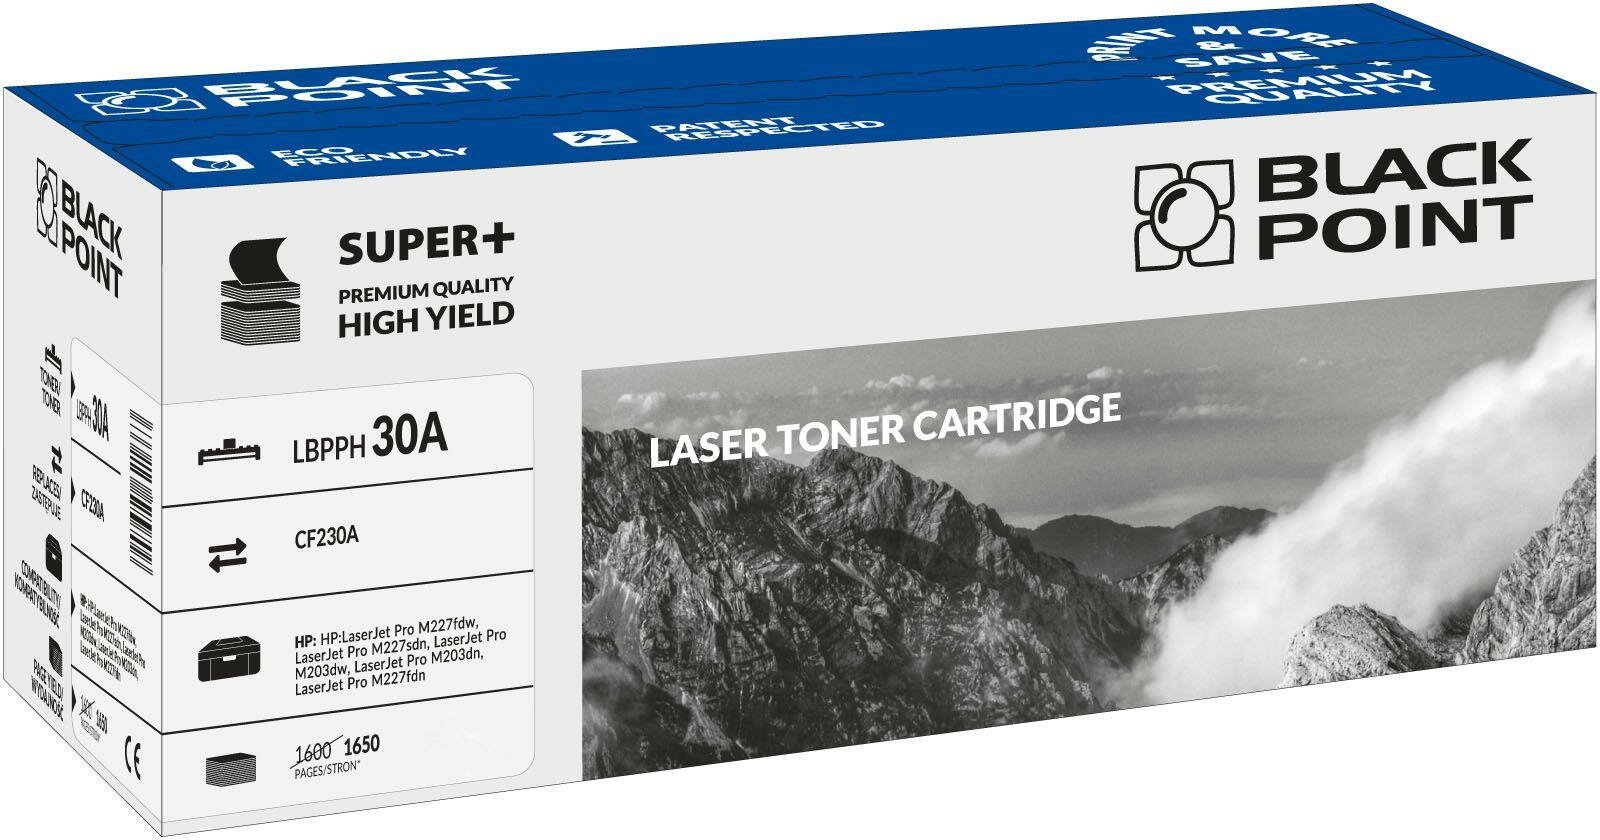 Toner laserowy Black Point Super Plus LBPPH30A widok pod kątem na opakowanie